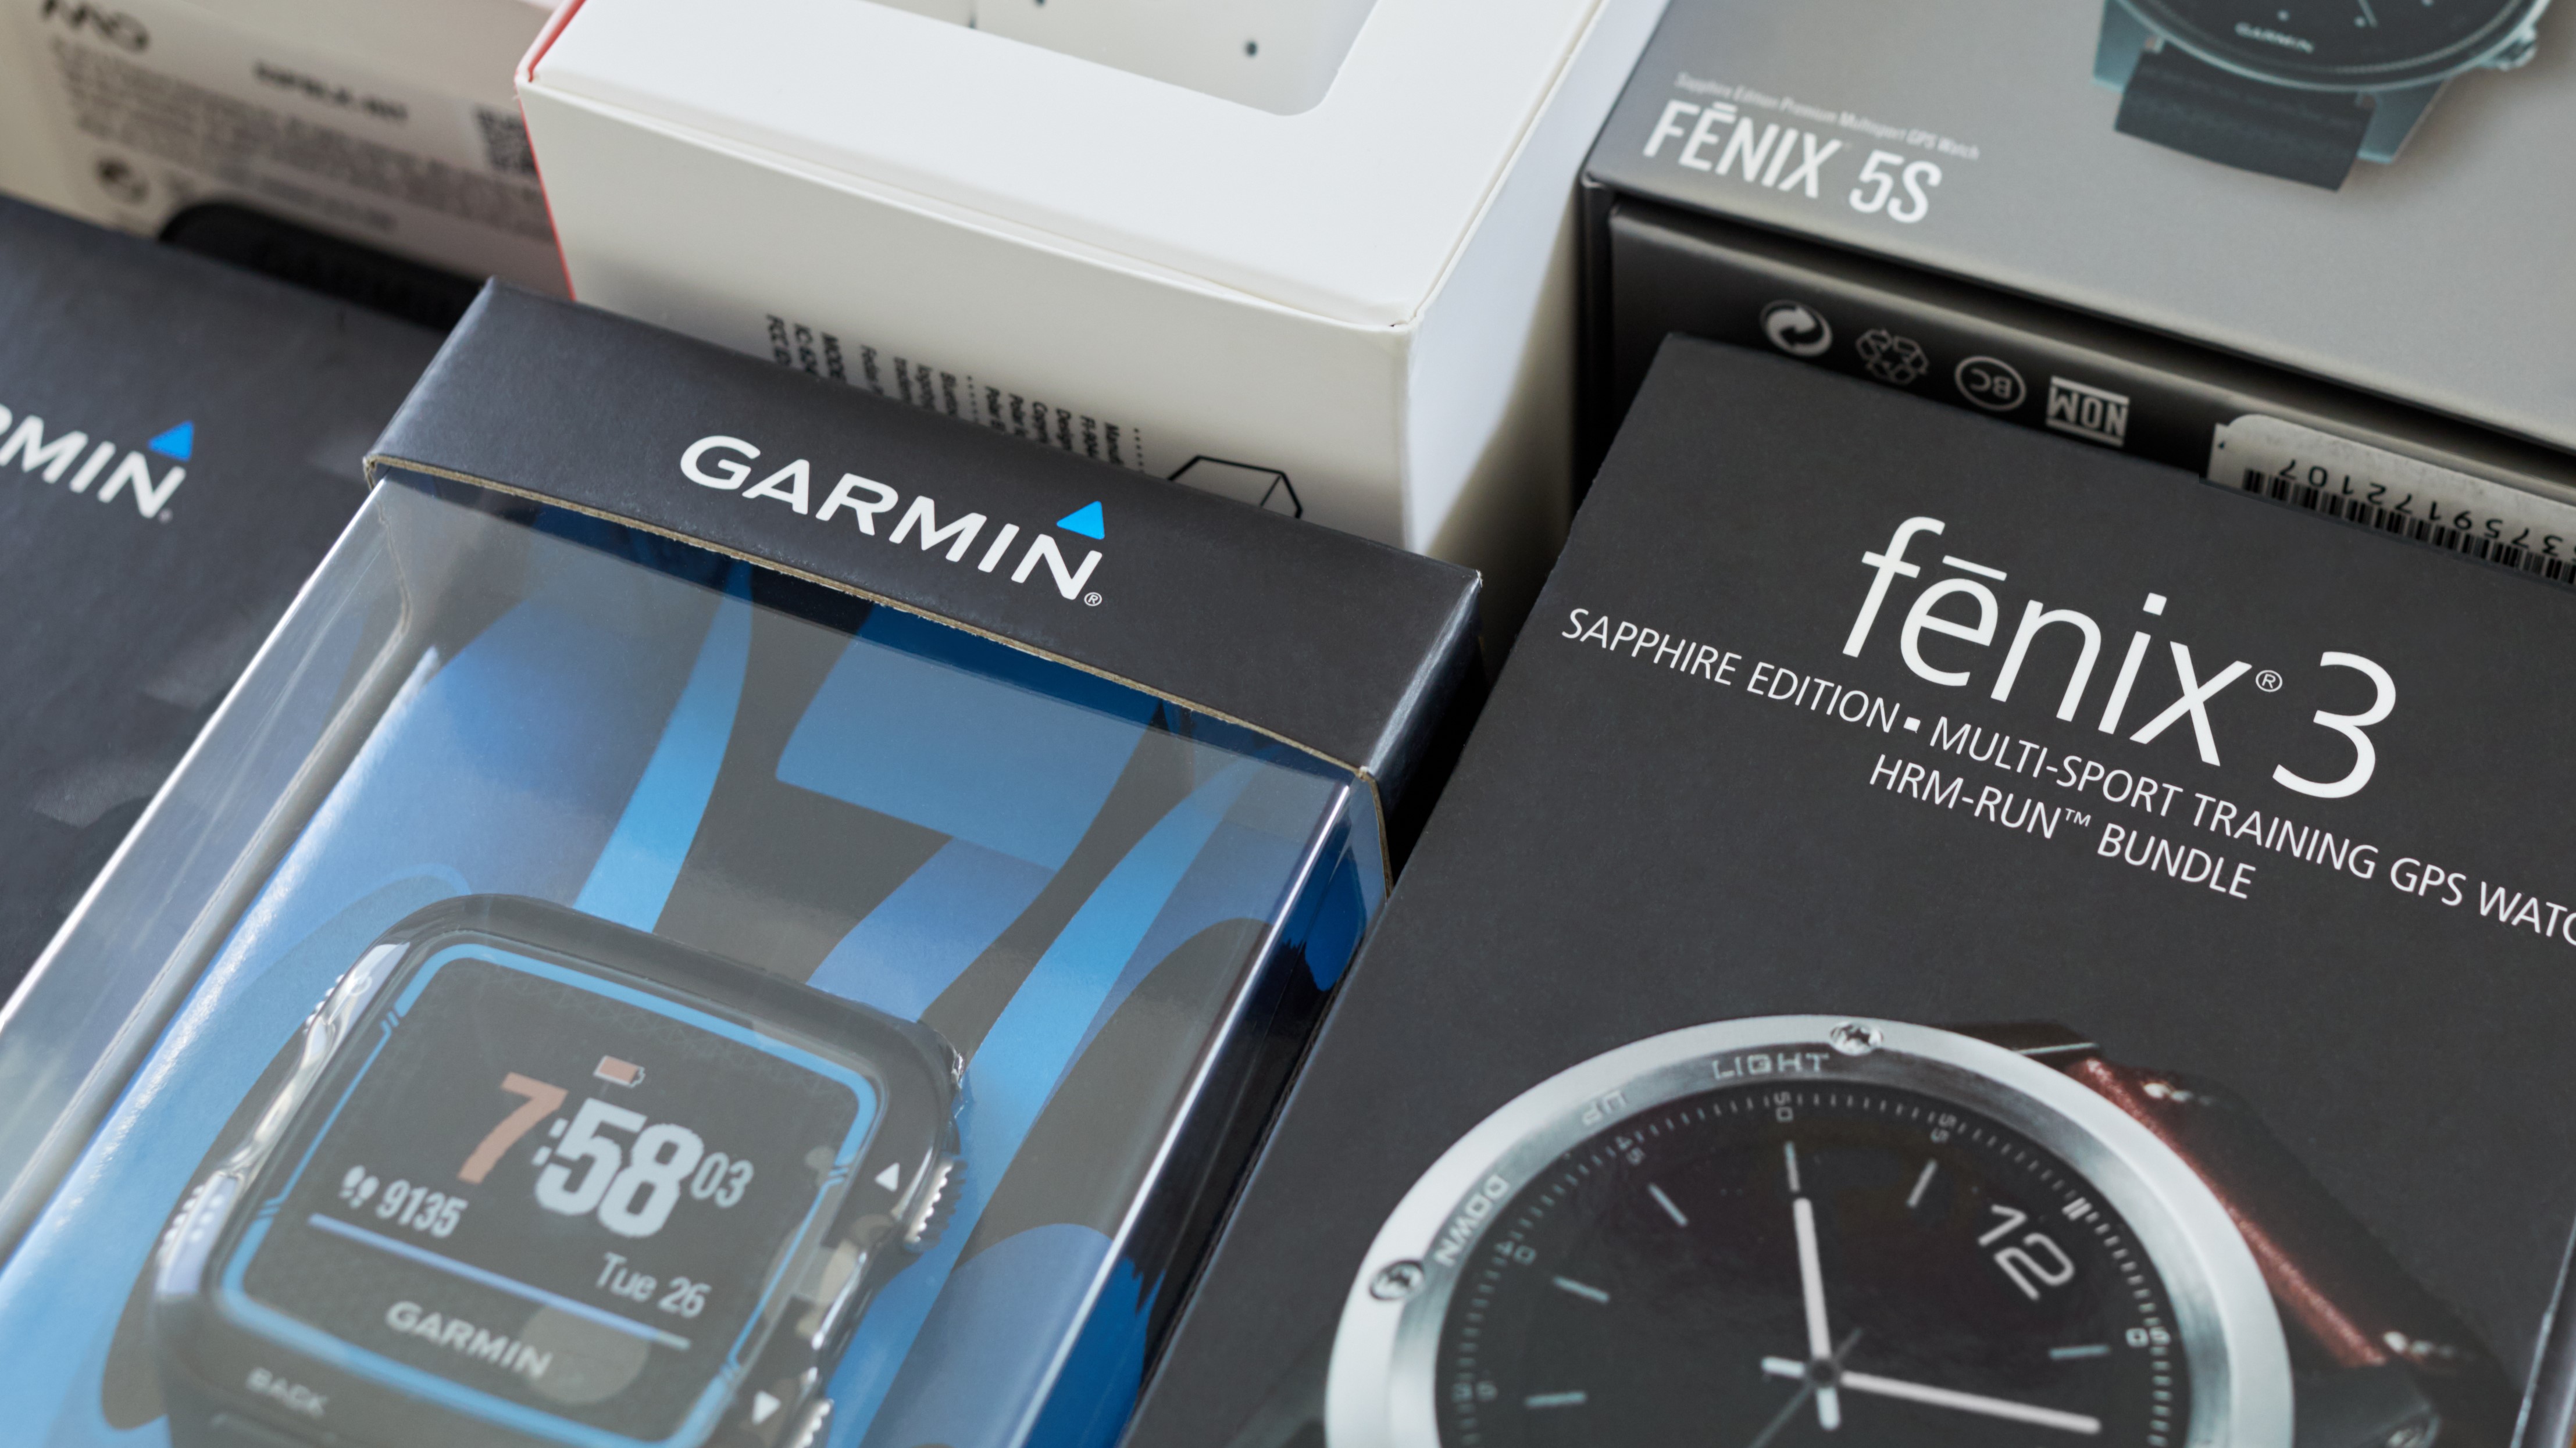 Garmin watch boxes